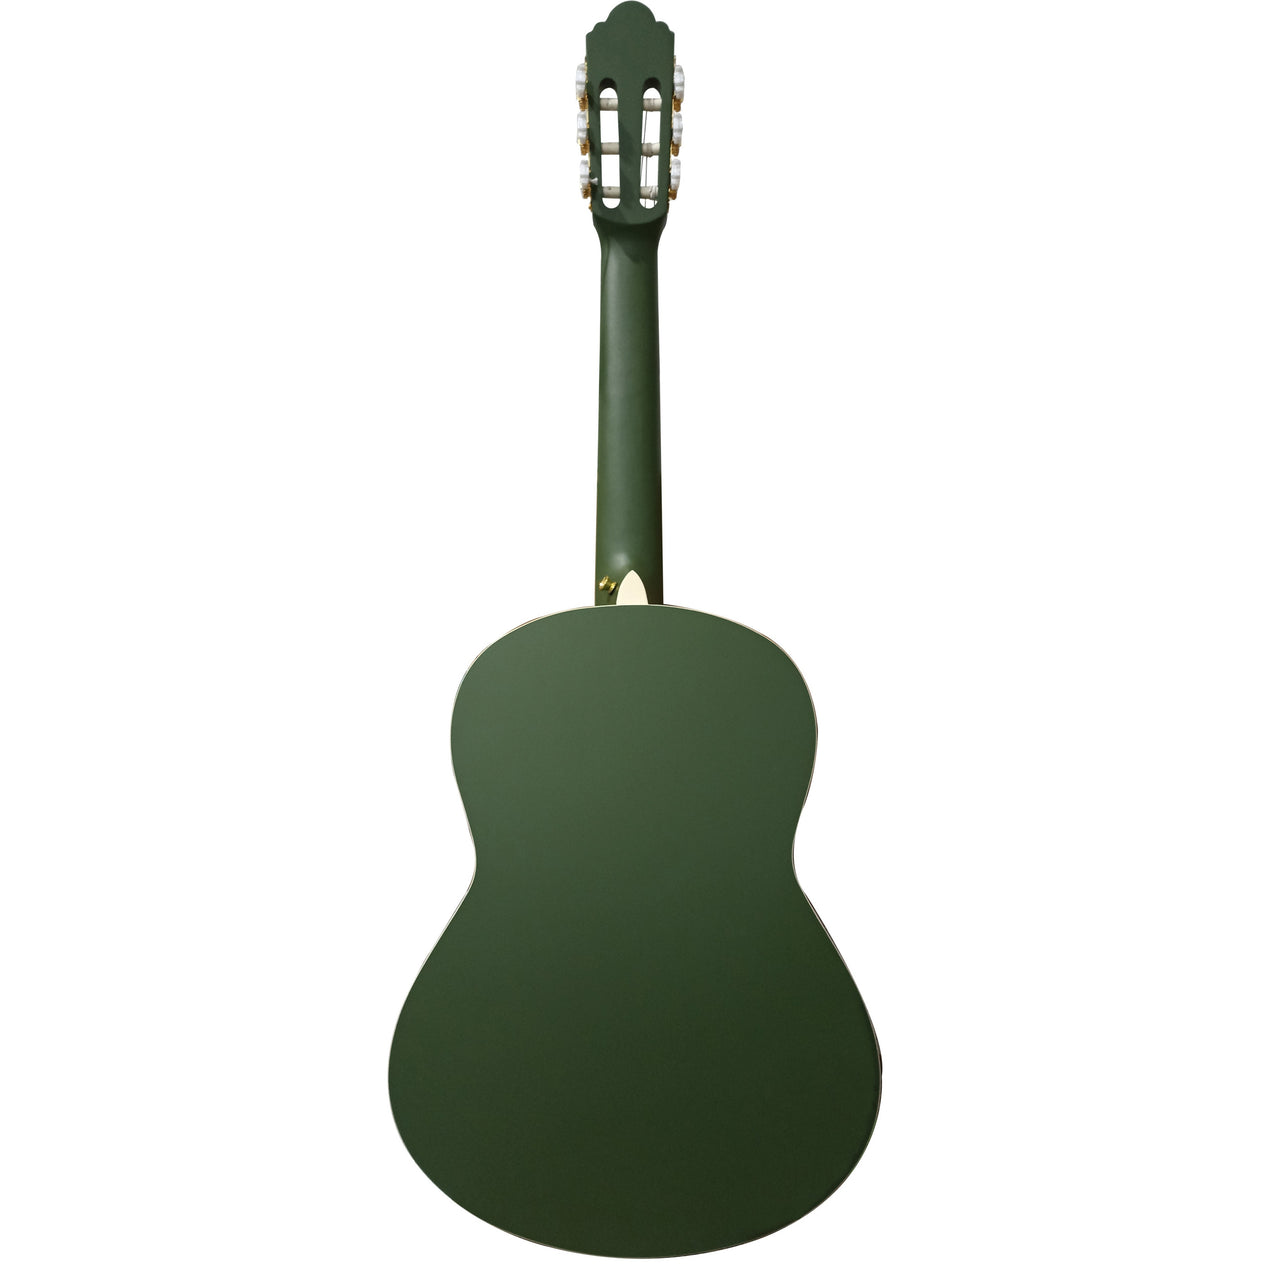 Guitarra Clasica Bamboo Gc-39-green Verde Con Funda